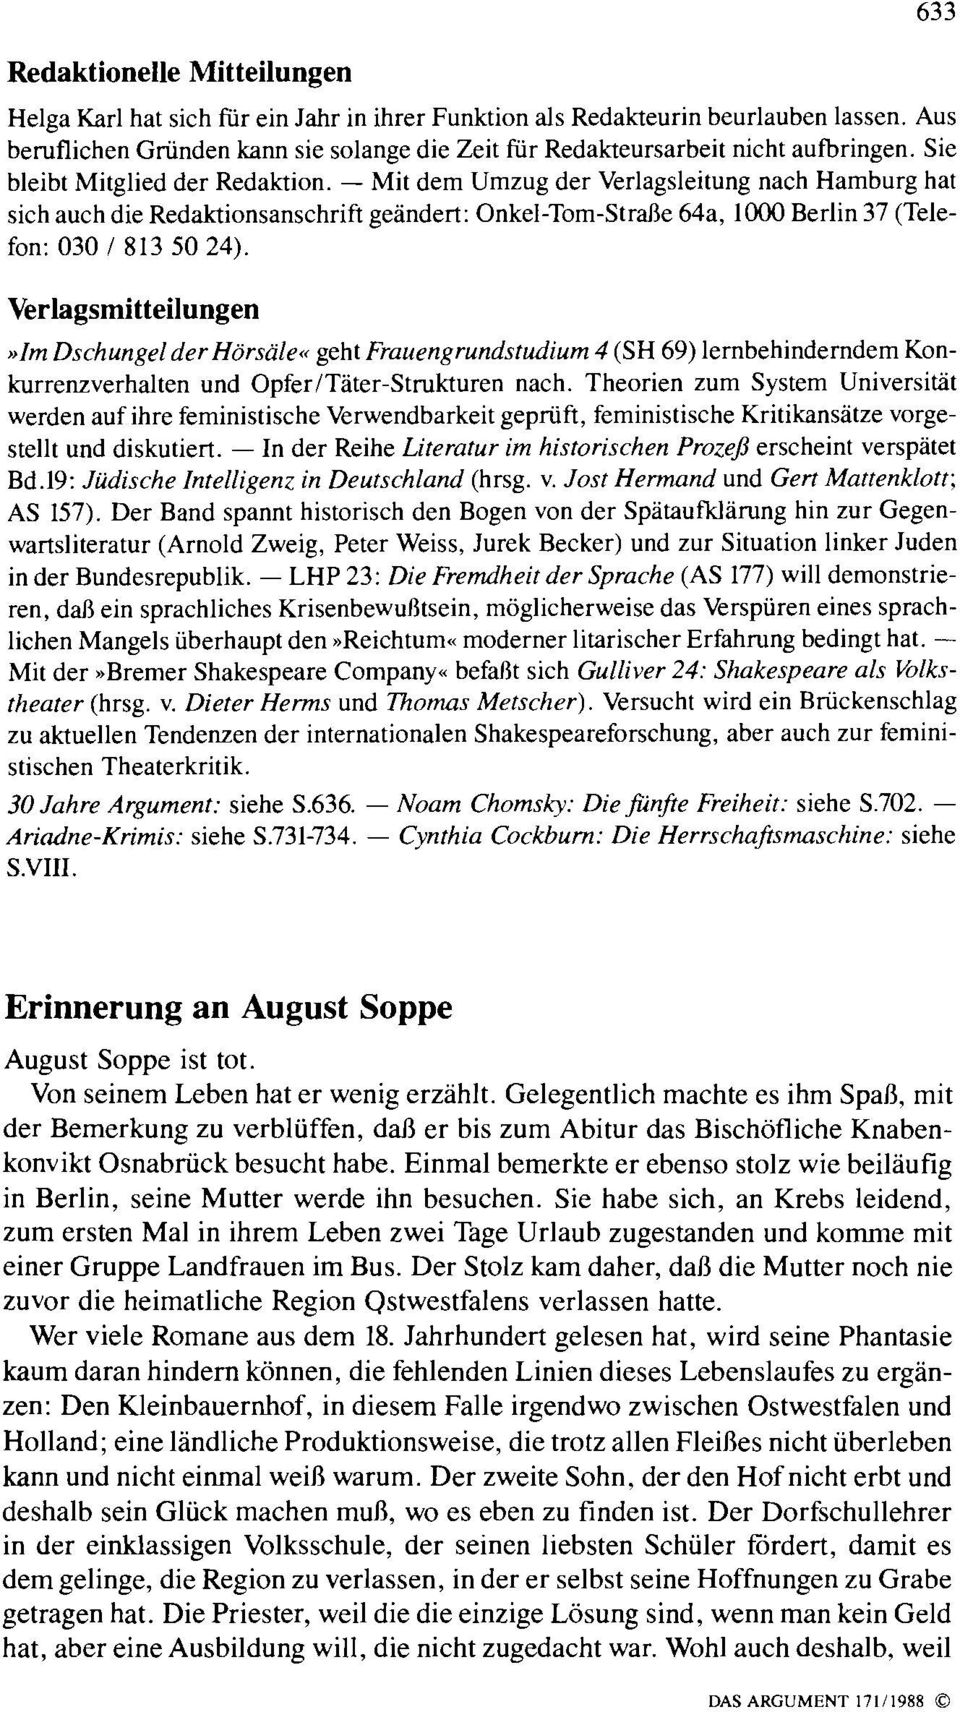 - Mit dem Umzug der Verlagsleitung nach Hamburg hat sich auch die Redaktionsanschrift geändert: Onkel-Tom-Straße 64a, 1000 Ber!in 37 (Telefon: 030/8135024).